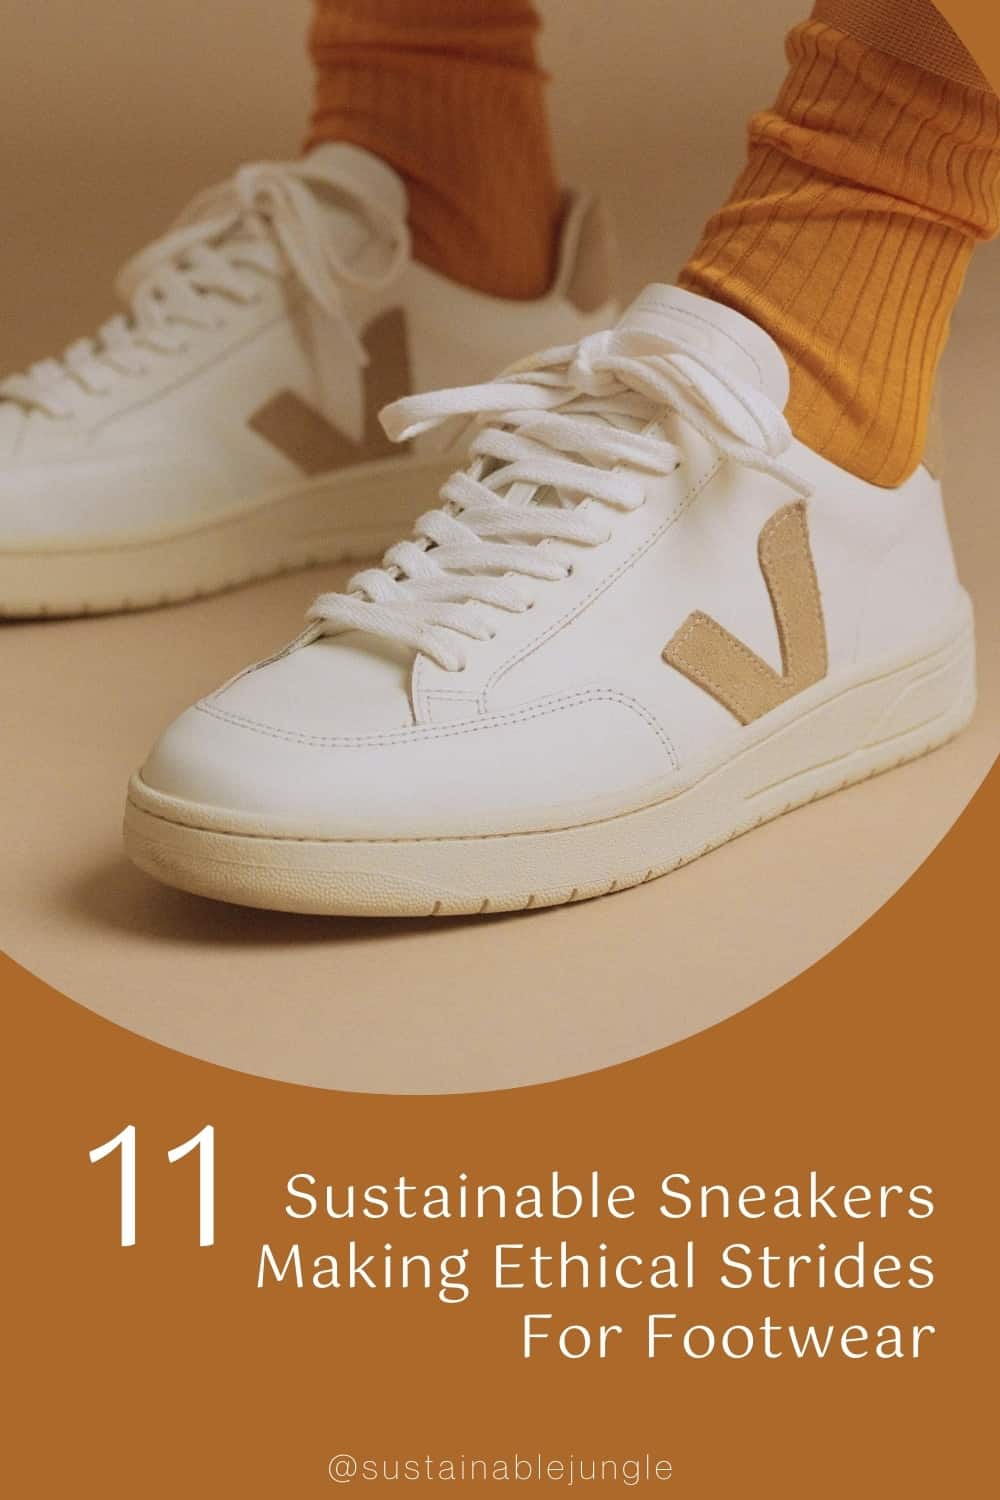 11款可持续运动鞋在鞋类领域取得了伦理进步#可持续运动鞋#伦理运动鞋#可持续运动鞋品牌#可持续运动鞋#伦理和可持续运动鞋#可持续网球鞋#可持续丛林图片来源:VEJA